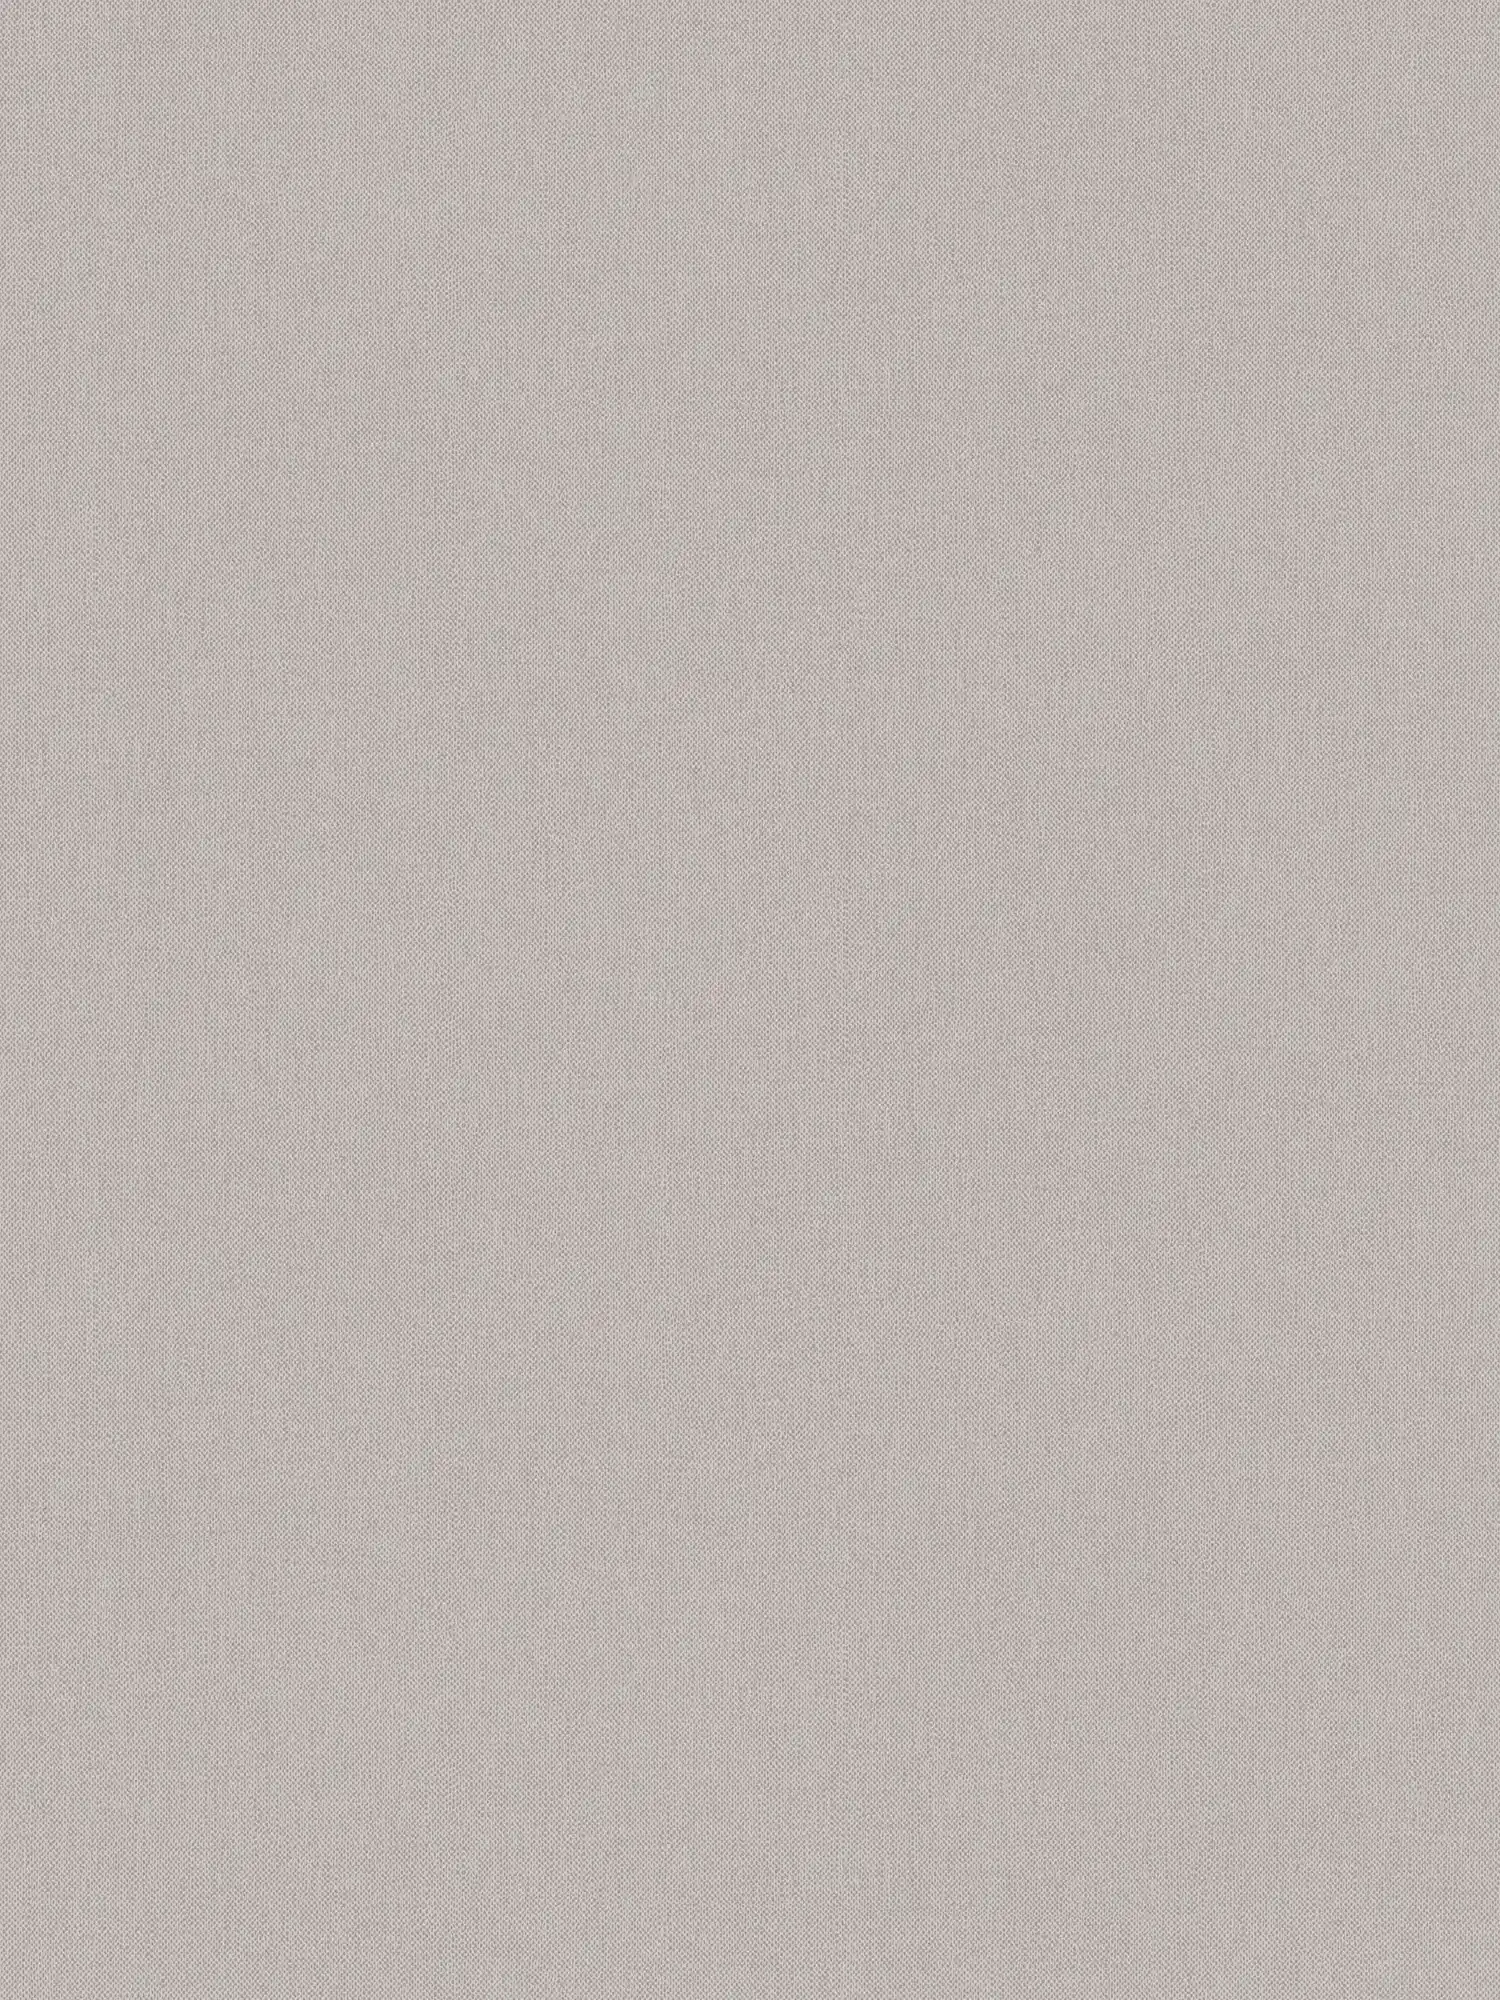 Papier peint taupe uni gris beige avec aspect textile - gris, marron
